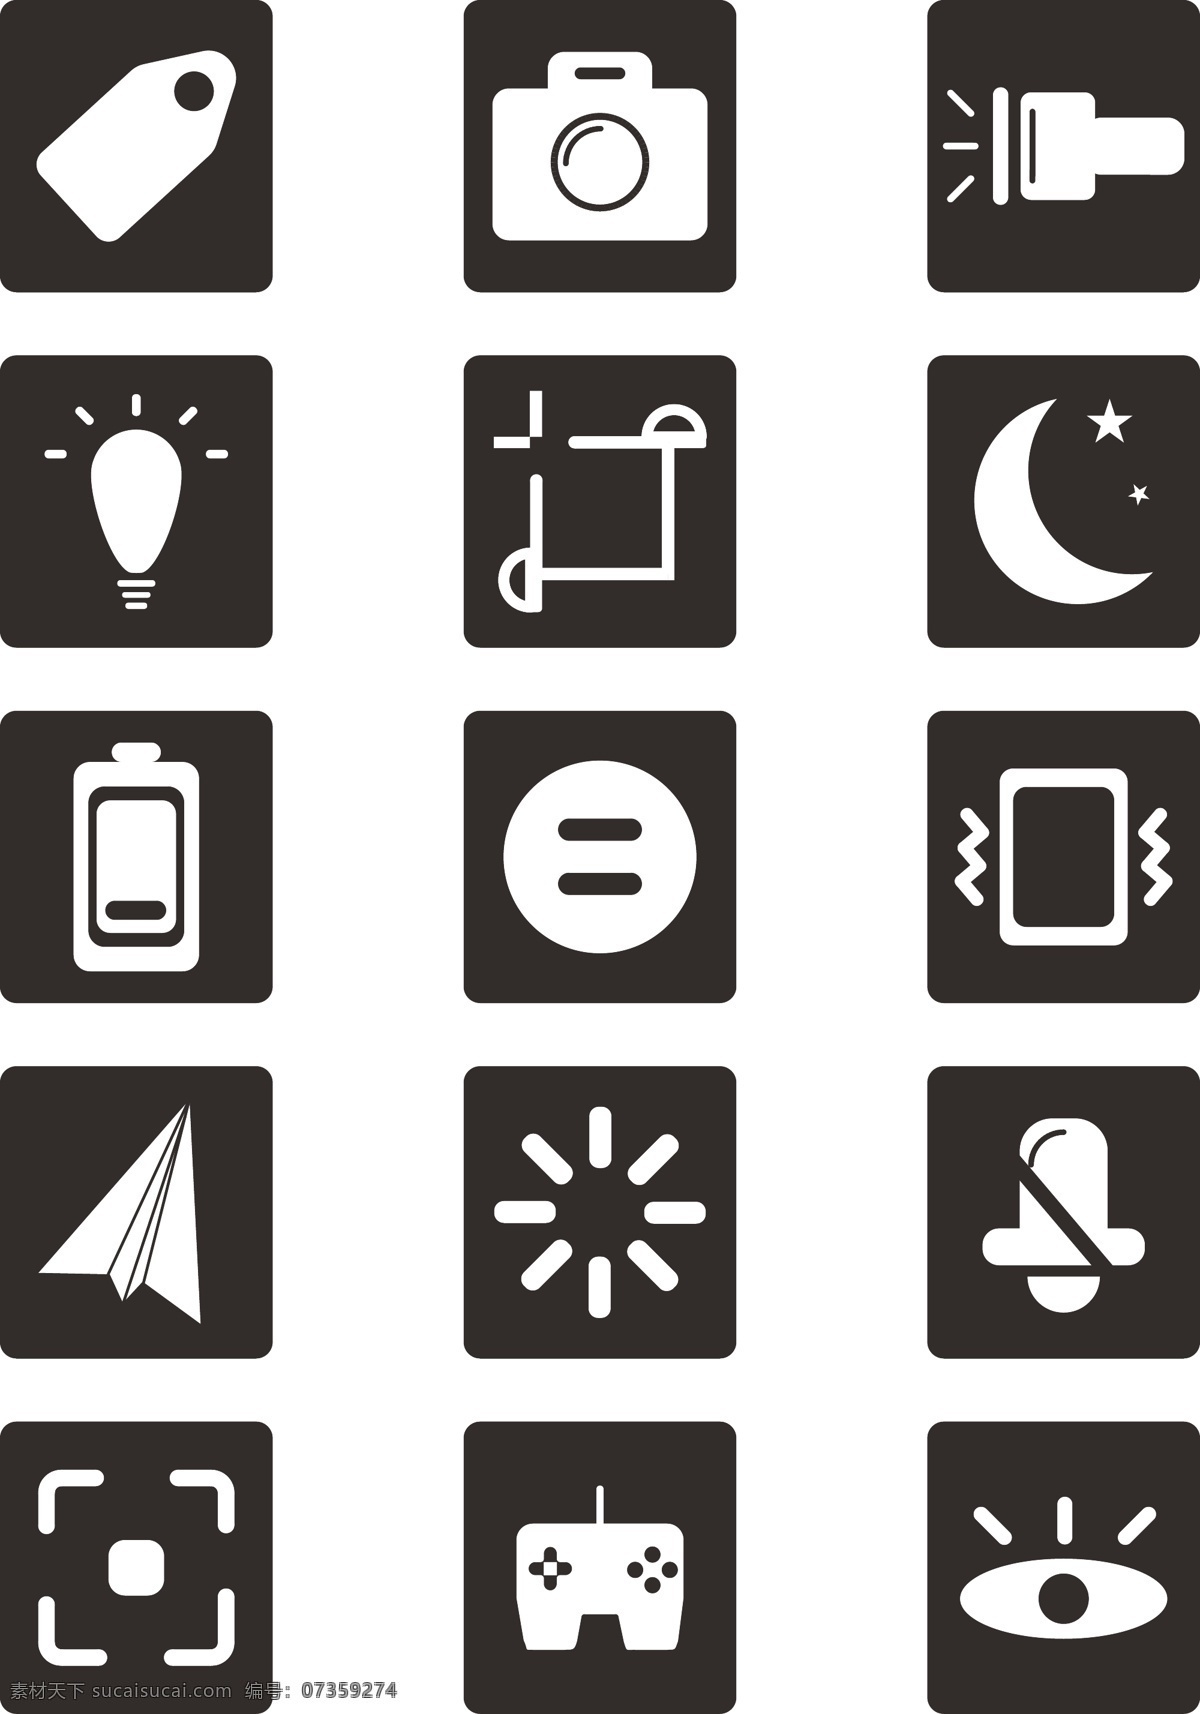 手机 appicon 商用 元素 图标 icon 黑白 简约 手机快捷键 可商用